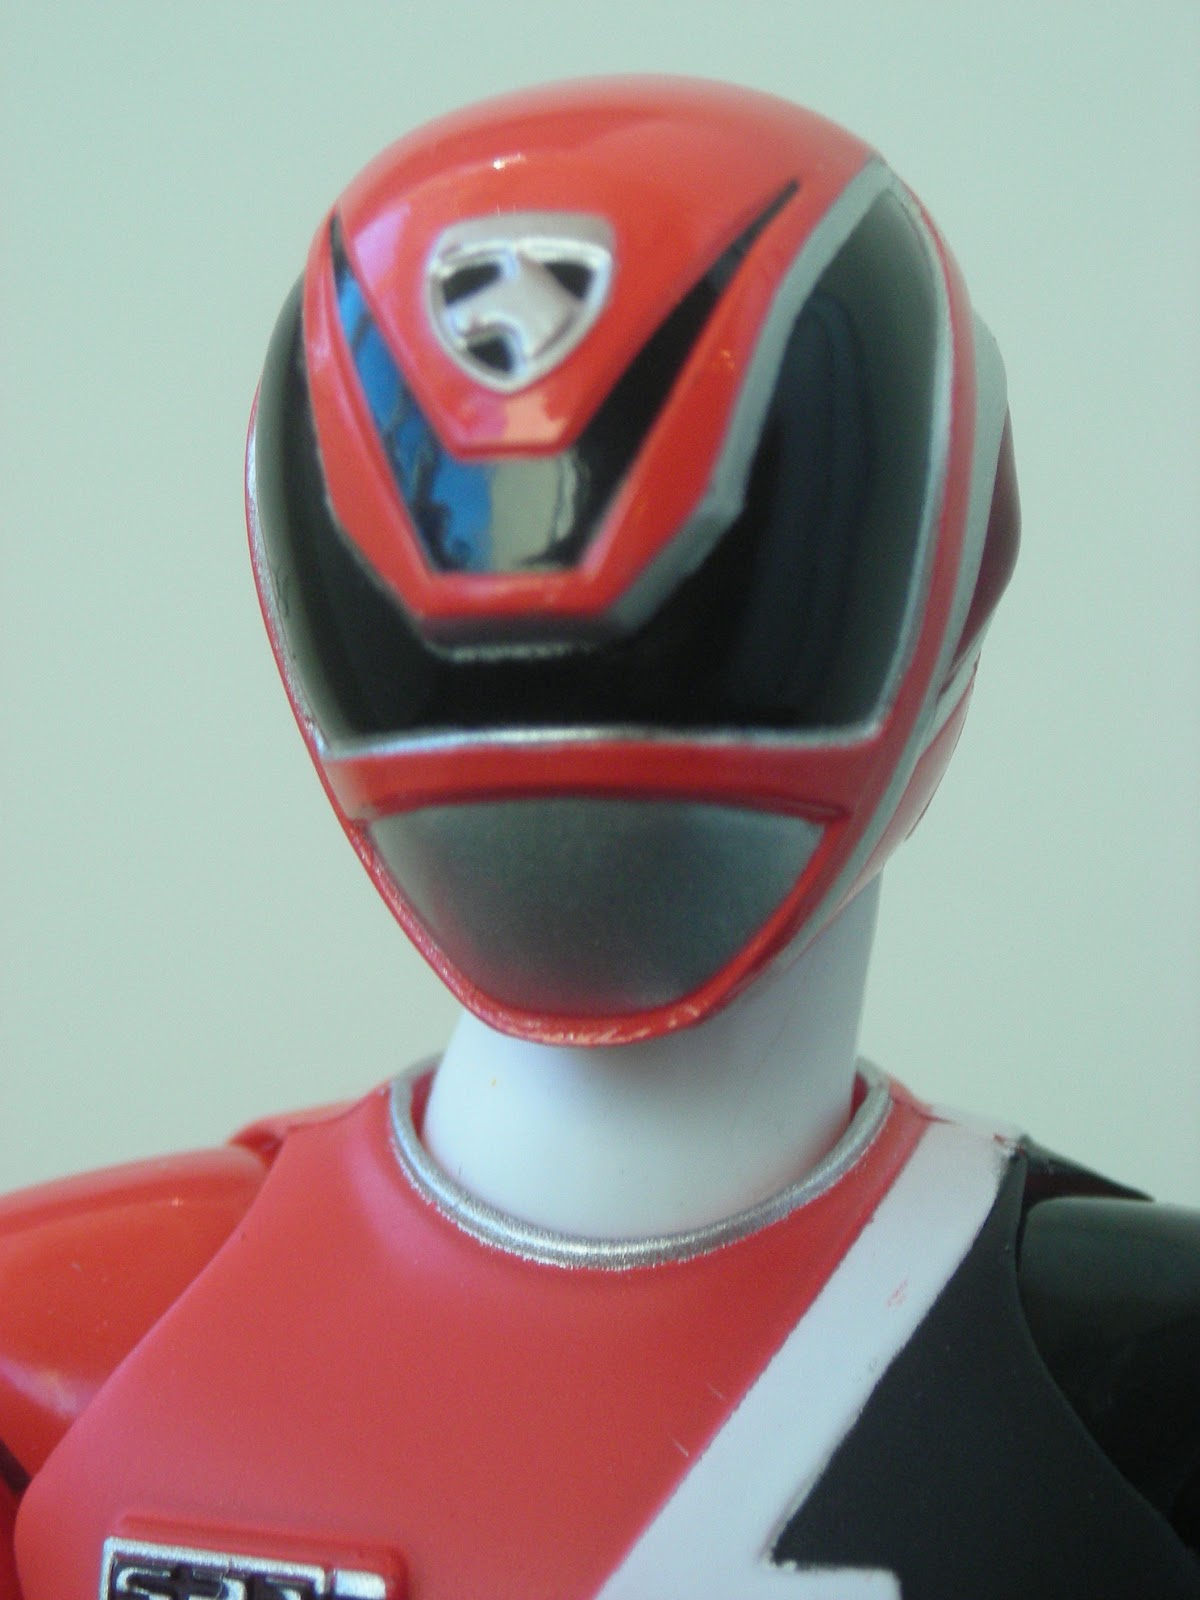 S.H.Figuarts Tokusou Sentai Dekaranger DEKA RED Action Figure BANDAI from Japan